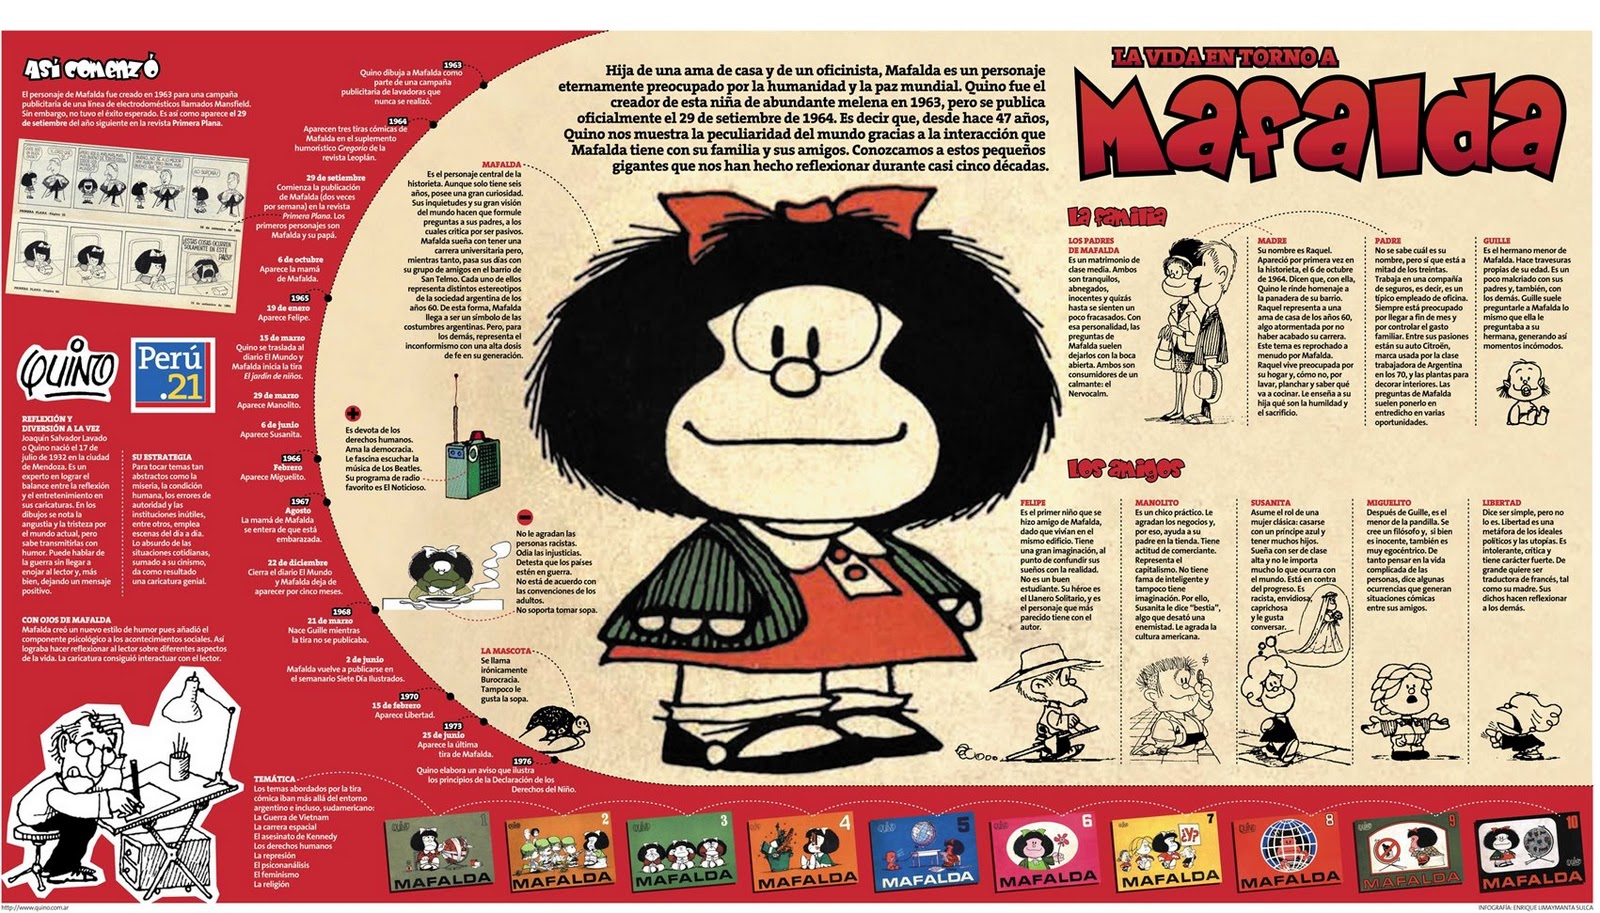 Mafalda #infografia #infographic #humor | Infografías en castellano